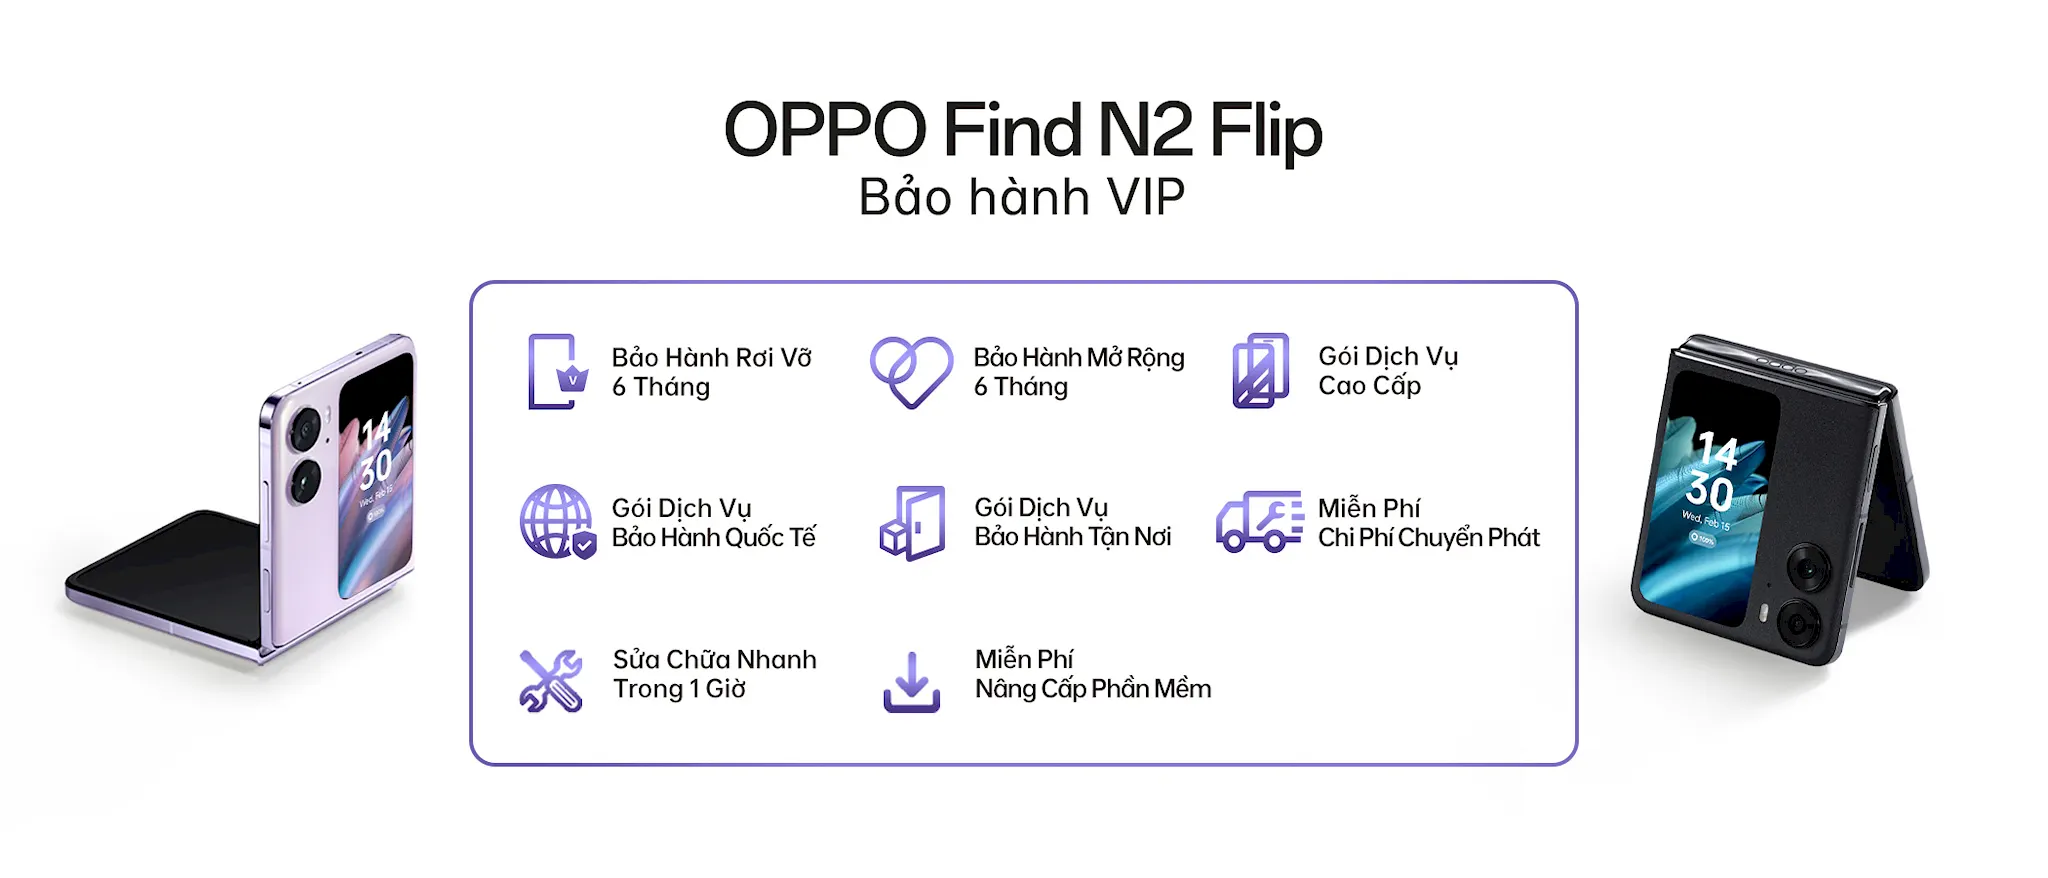 OPPO ra mắt Find N2 Flip tại thị trường Việt Nam, giá 19,990,000 VND